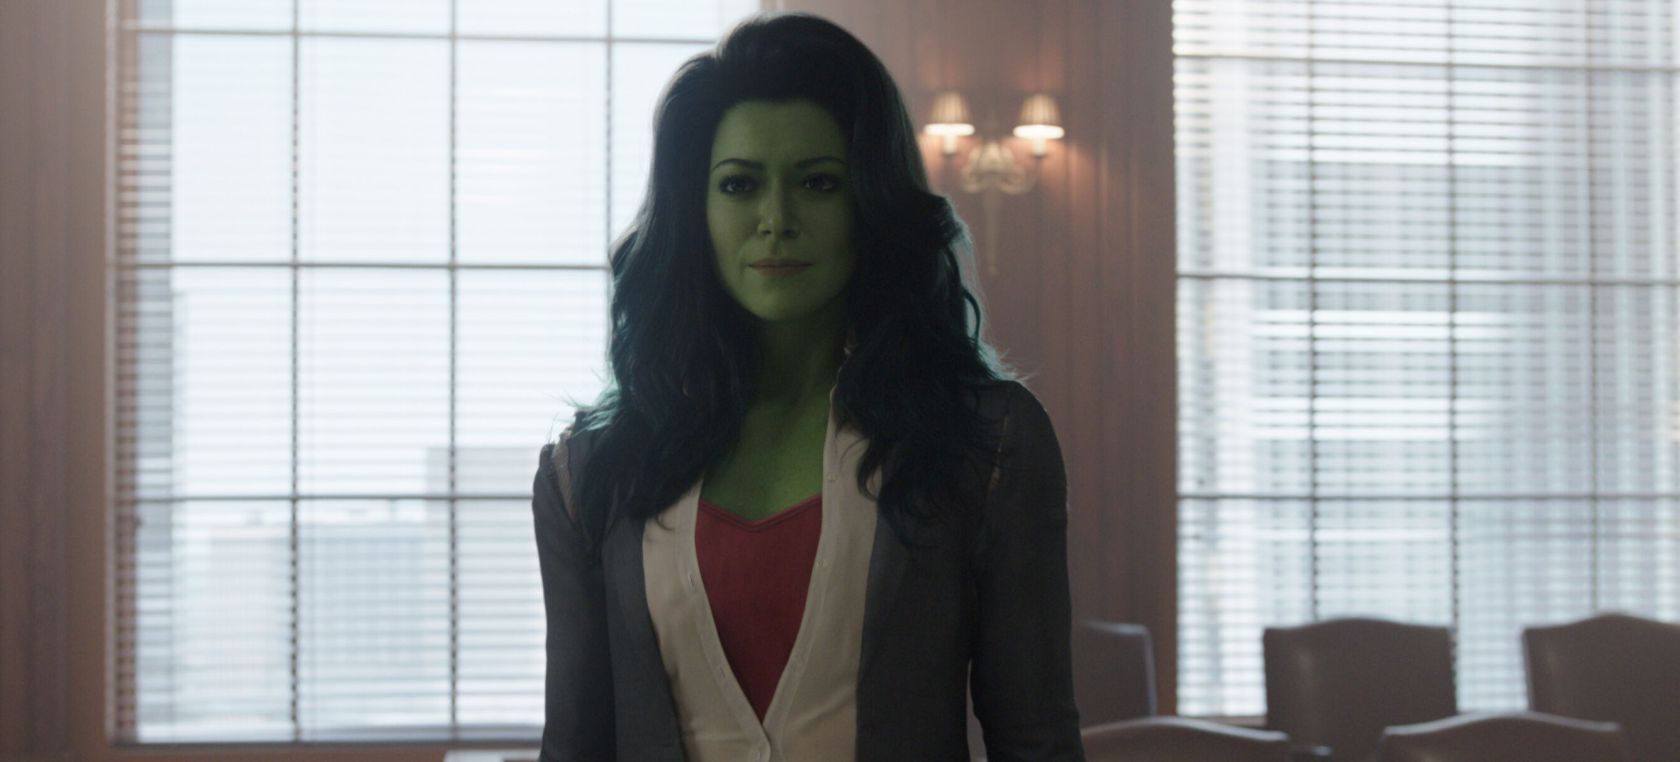 Hulka y el resto de heroínas de Marvel se enfrentan al peor villano: las críticas machistas sin fundamento